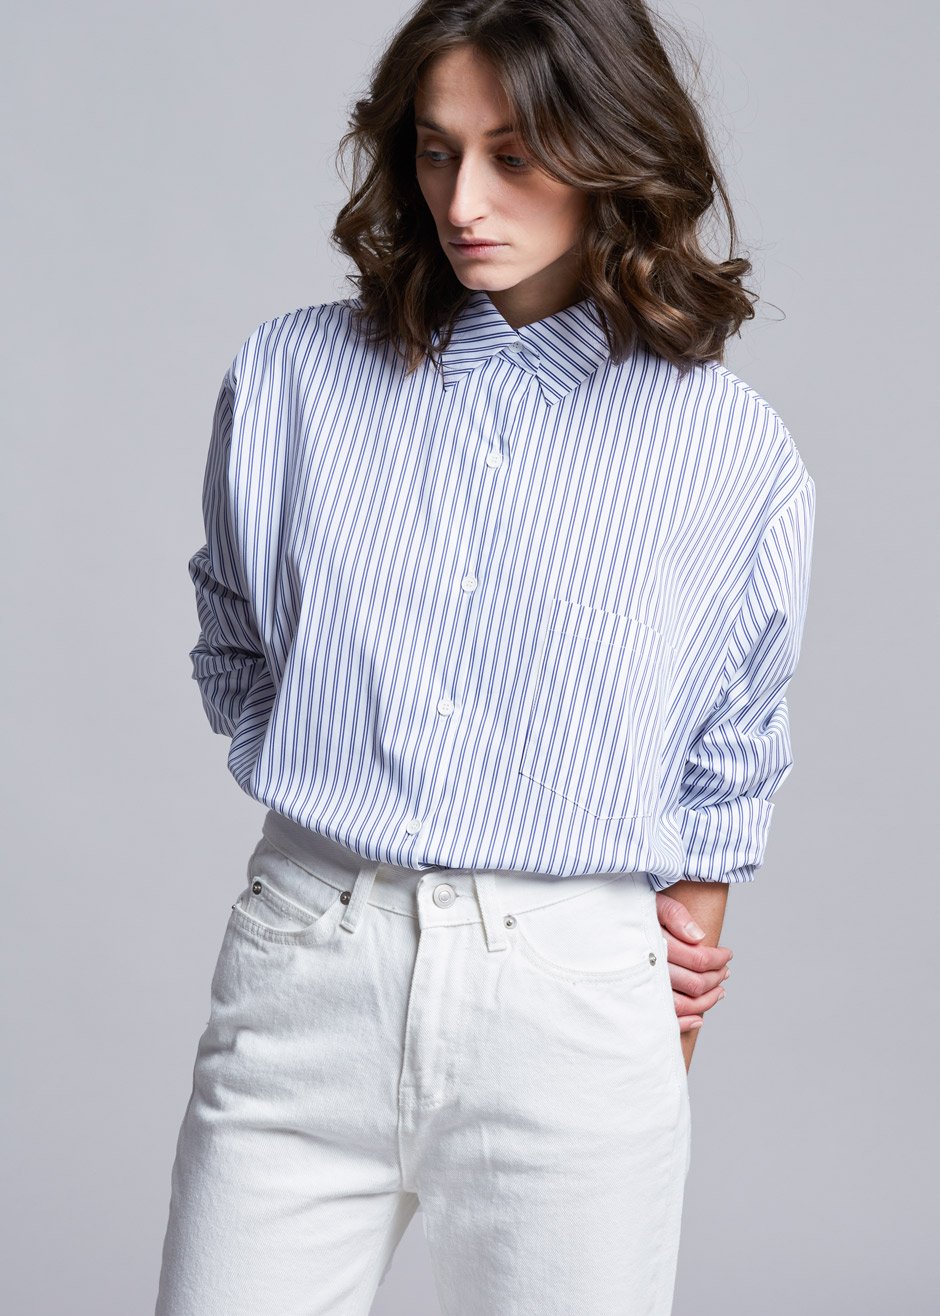 Pinstripe Statement Cuff Shirt in White/Cobalt - 1